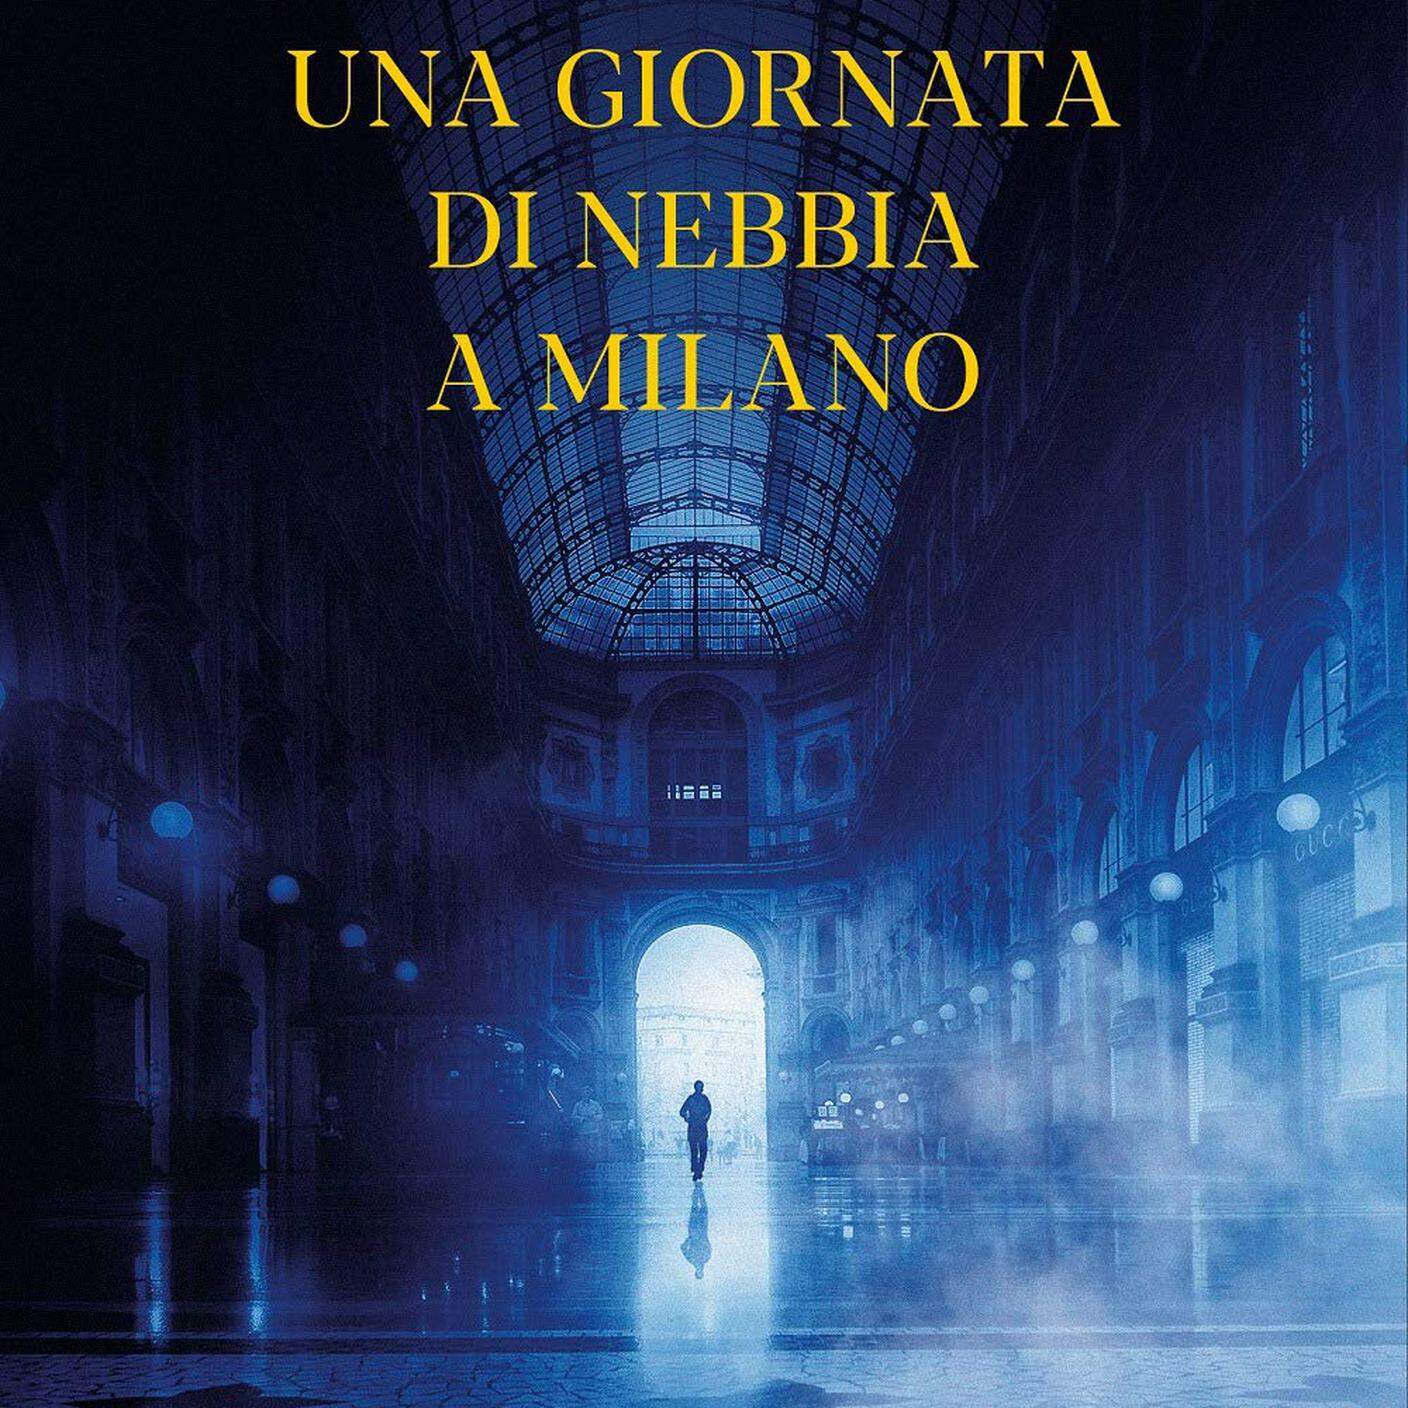 "Una giornata di nebbia a Milano", di Enrico Vanzina, Harper Collins (dettaglio di copertina)